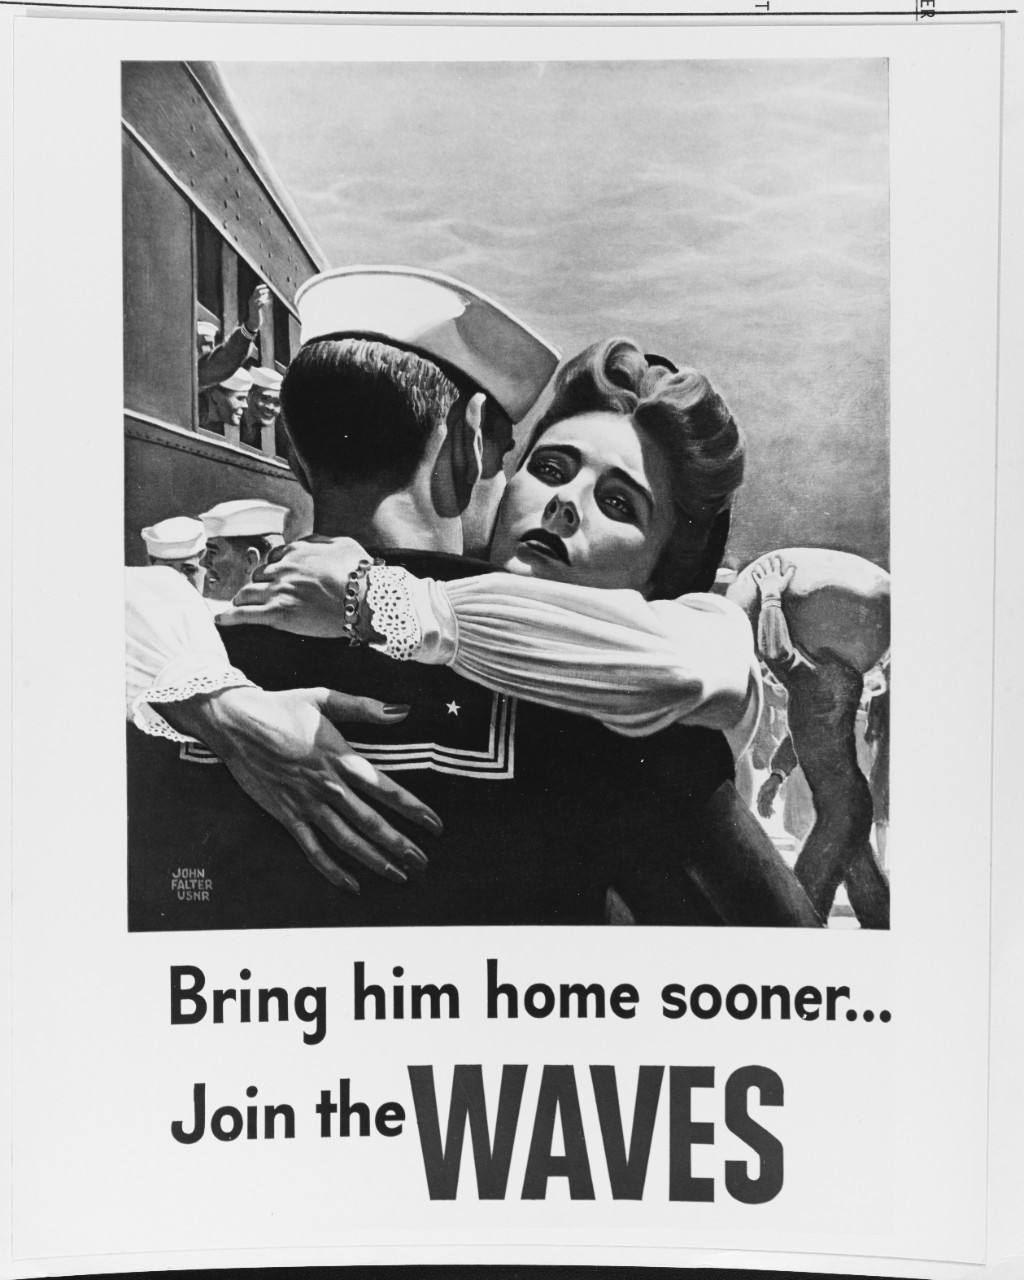 World War II WAVES recruiting poster